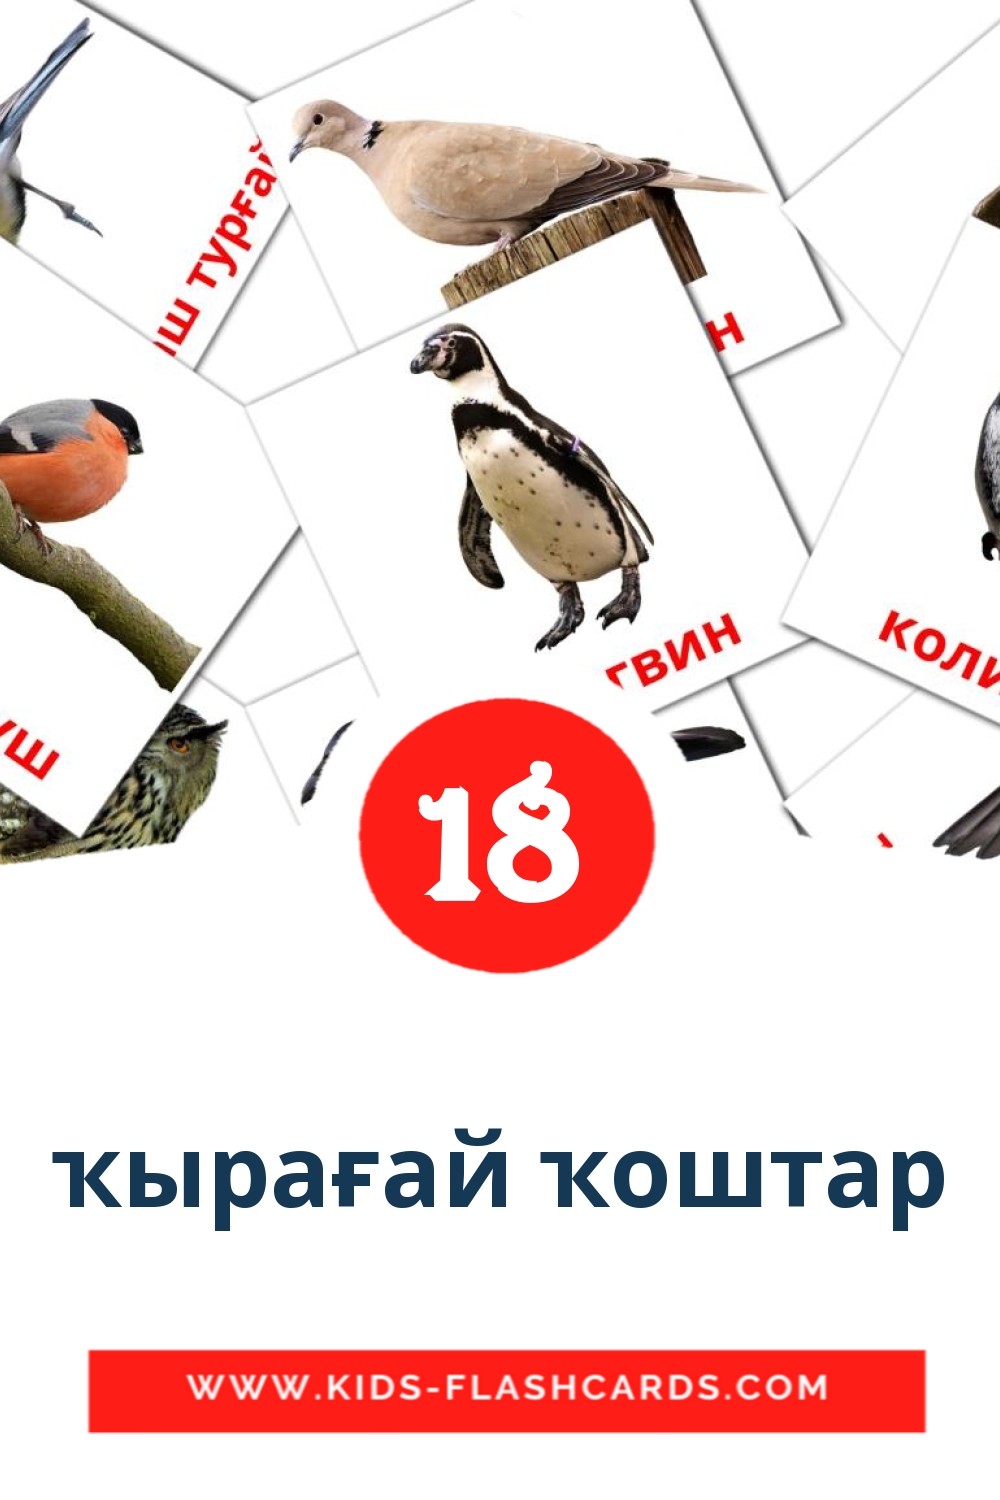 18 ҡырағай ҡоштар Bildkarten für den Kindergarten auf bashkir